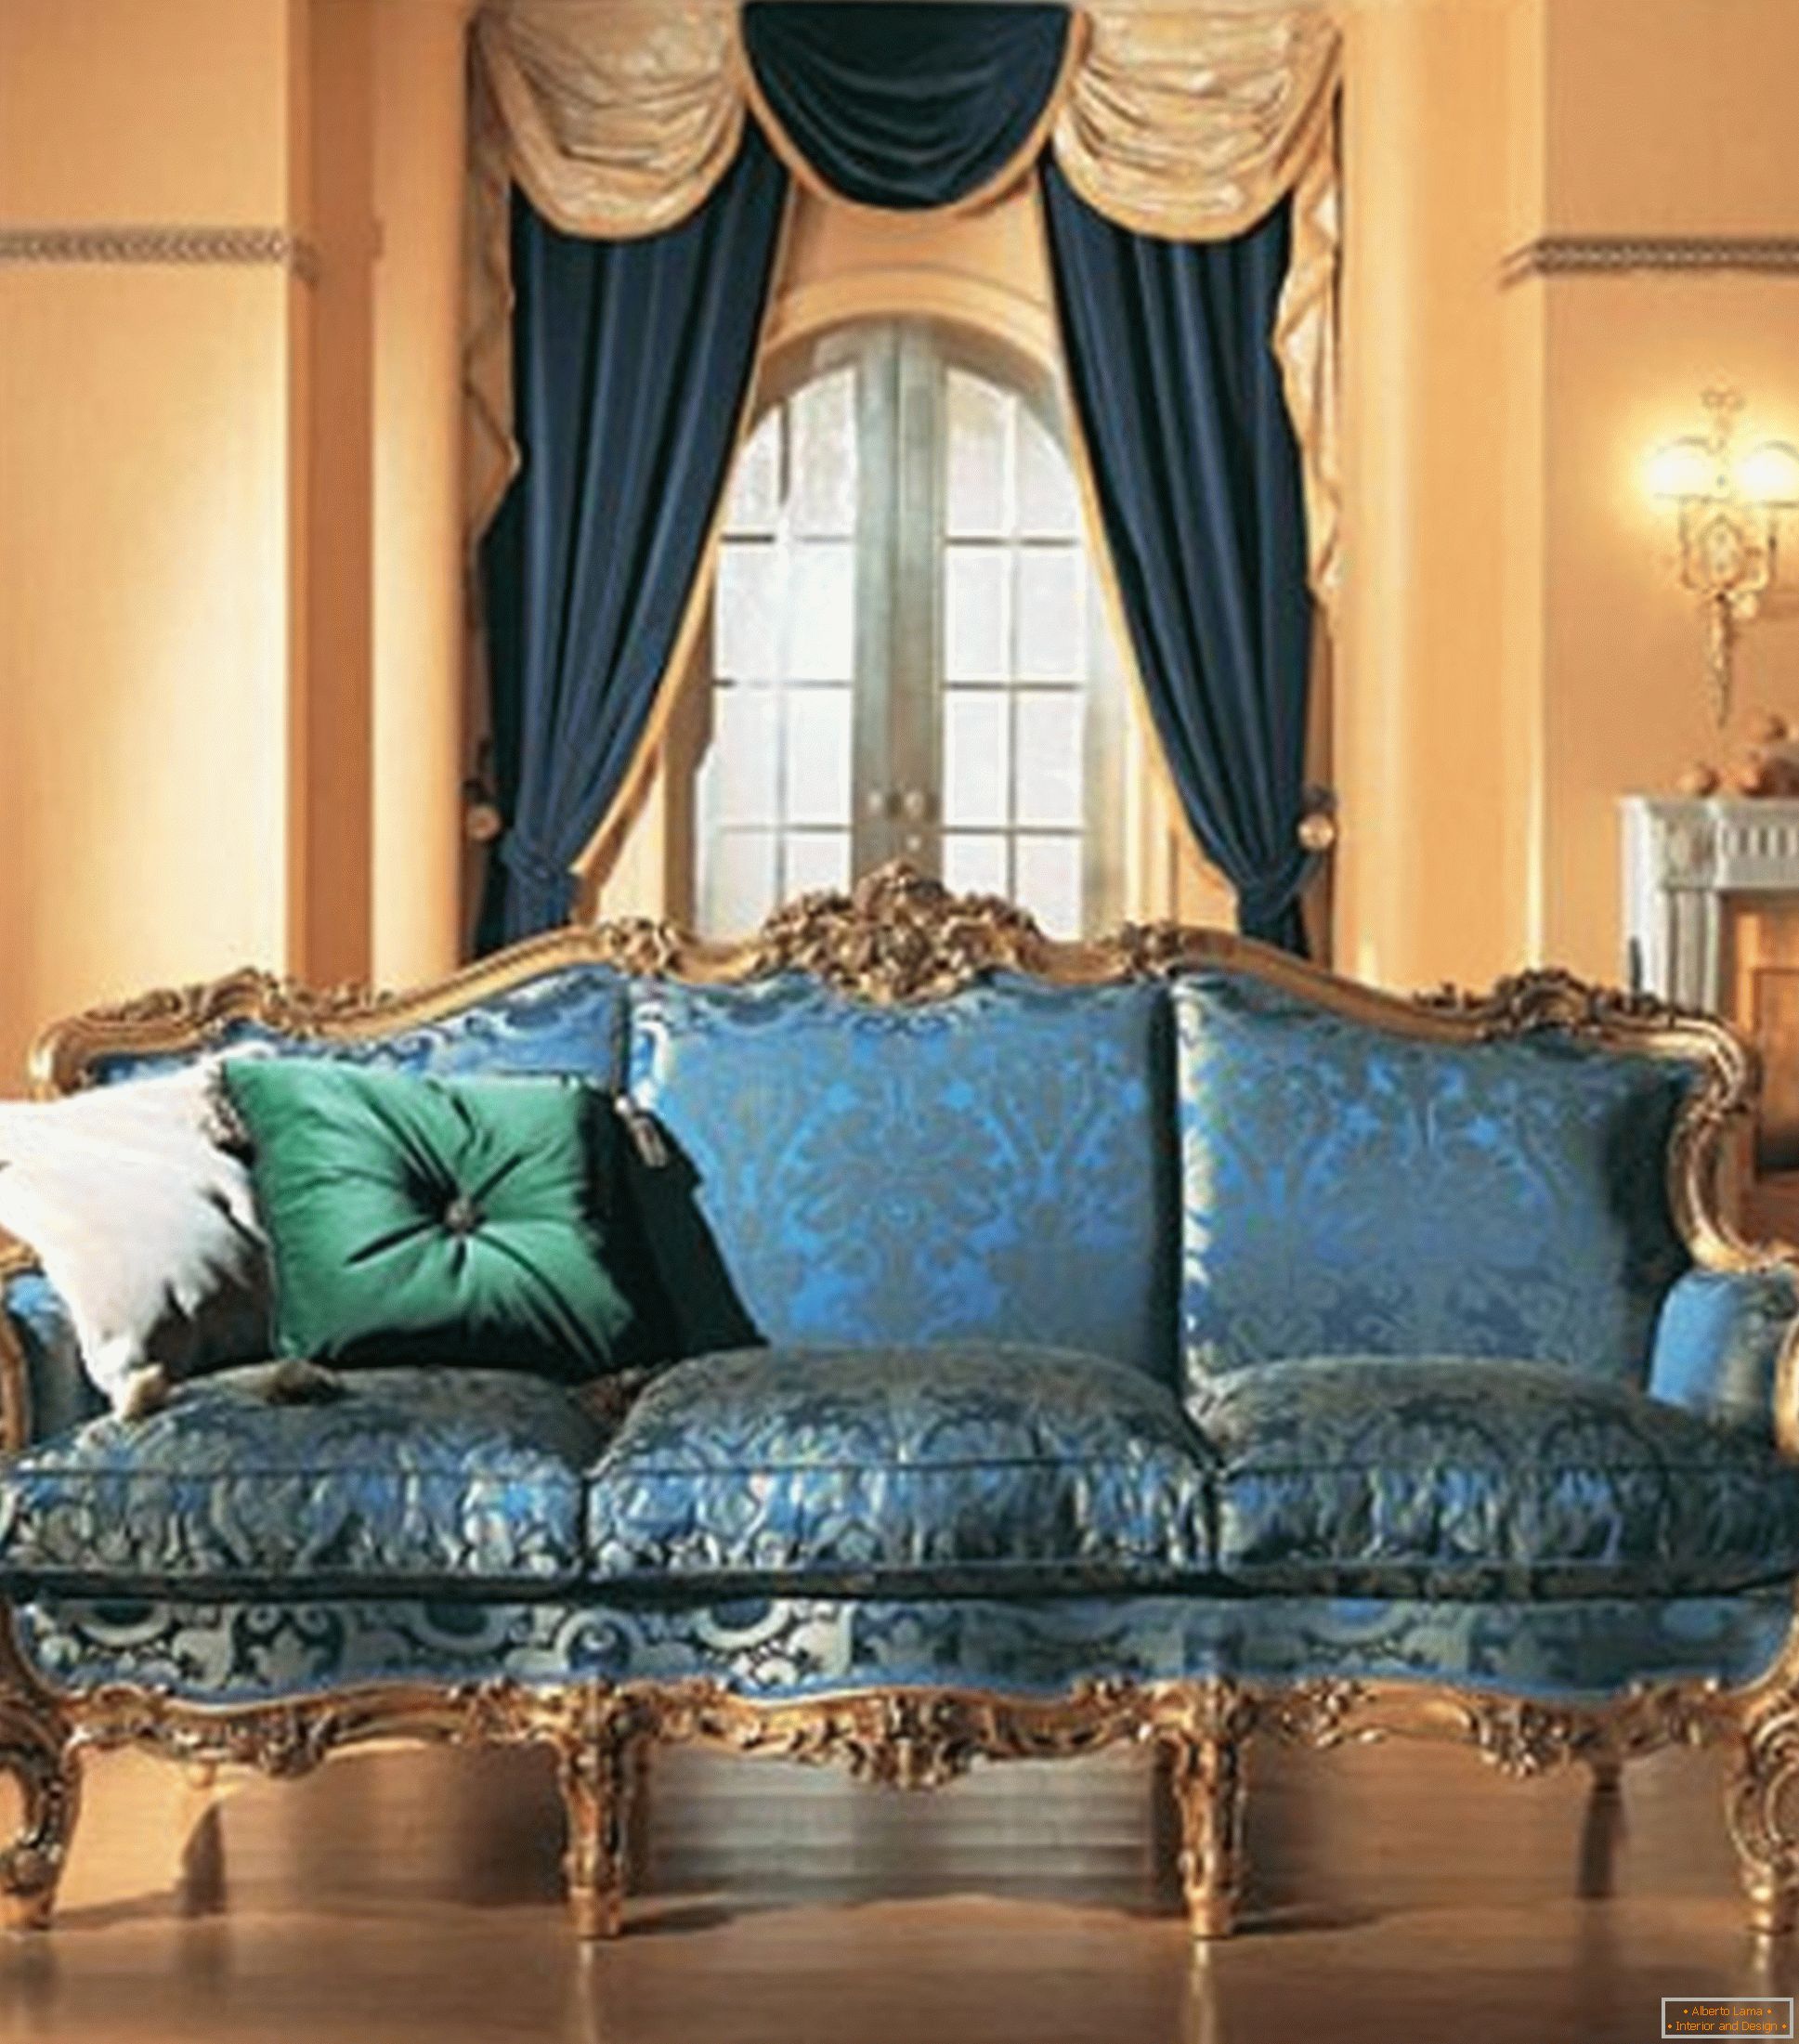 Kombinácia kontrastných farieb vo výzdobe obývacej izby v barokovom štýle.